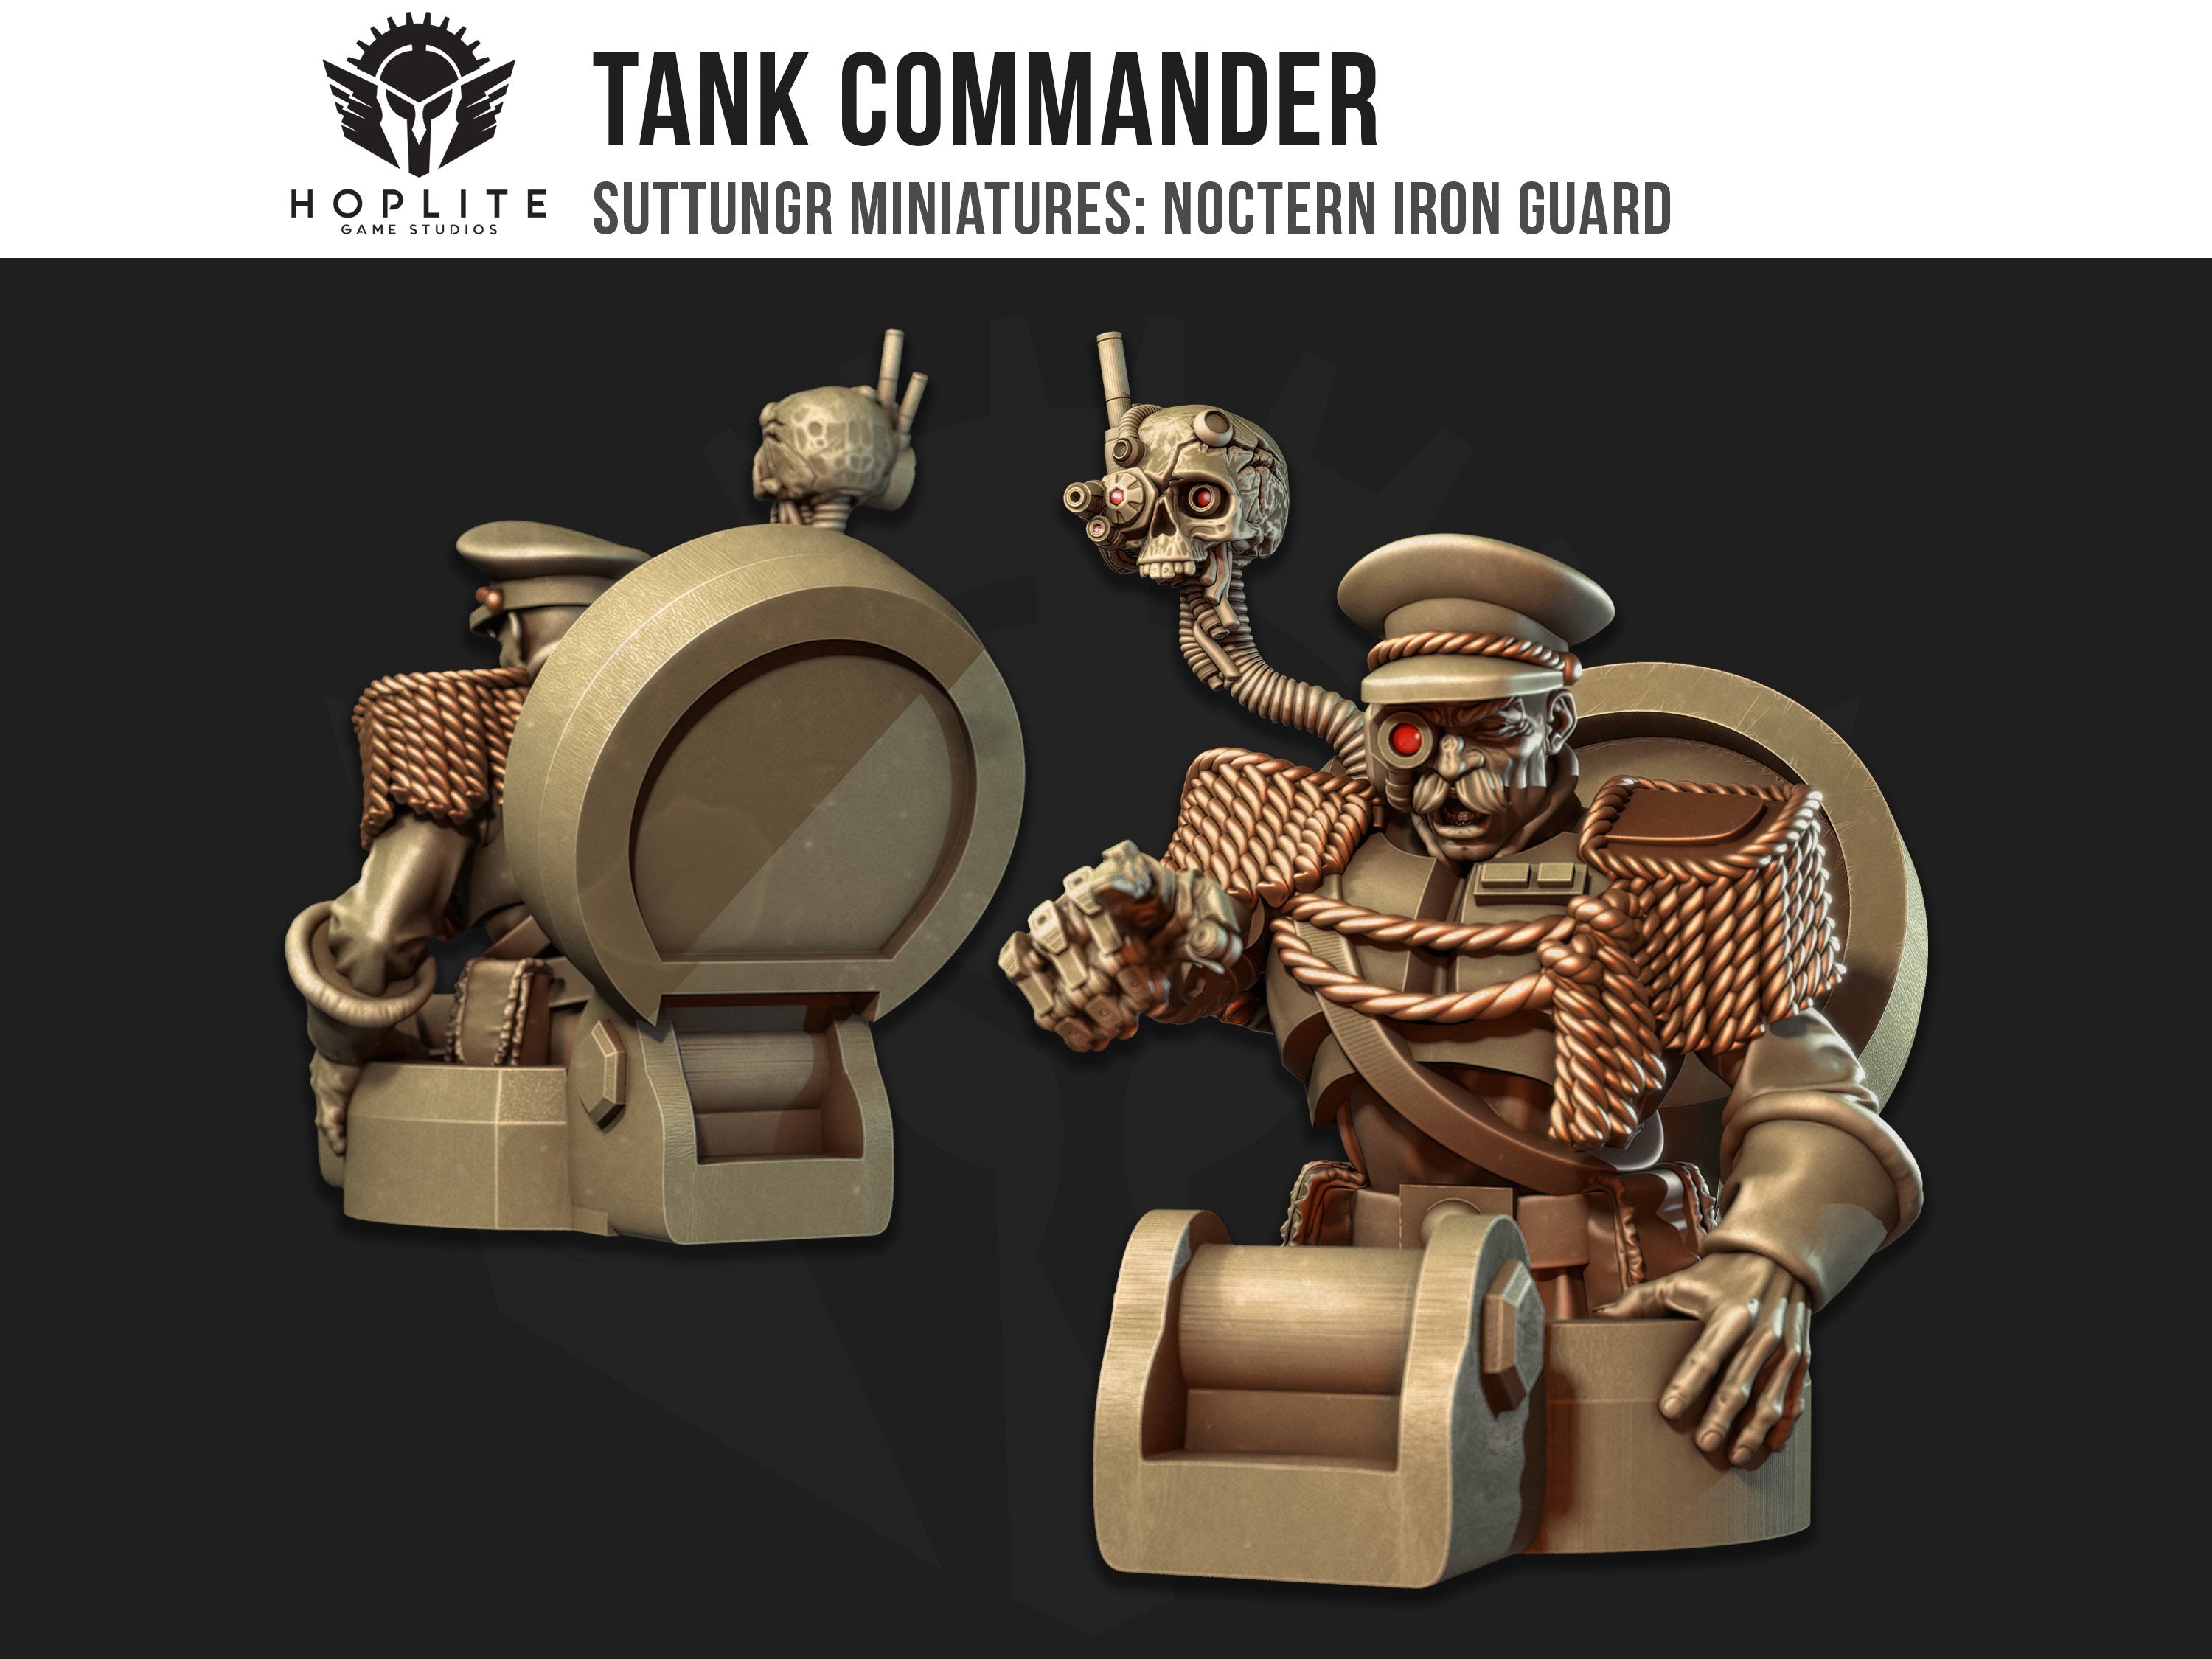 Comandante de tanque - Guardia de Hierro Noctern - Mordian - Grimdark Future - Miniaturas Suttungr